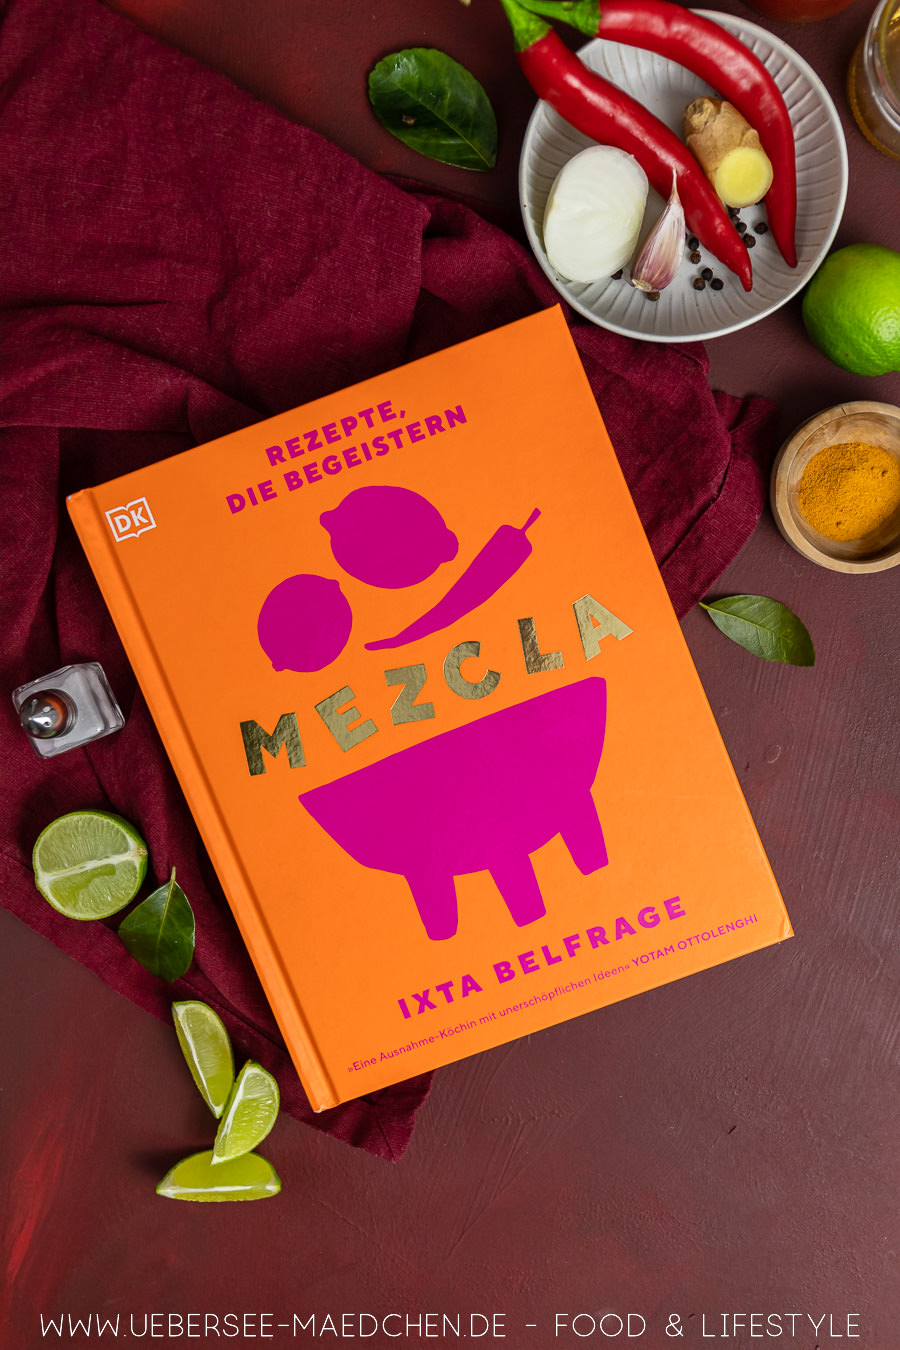 Das Buch Mezcla von Ixta Belfrage war eine Entdeckung Foodblogbilanz 2022